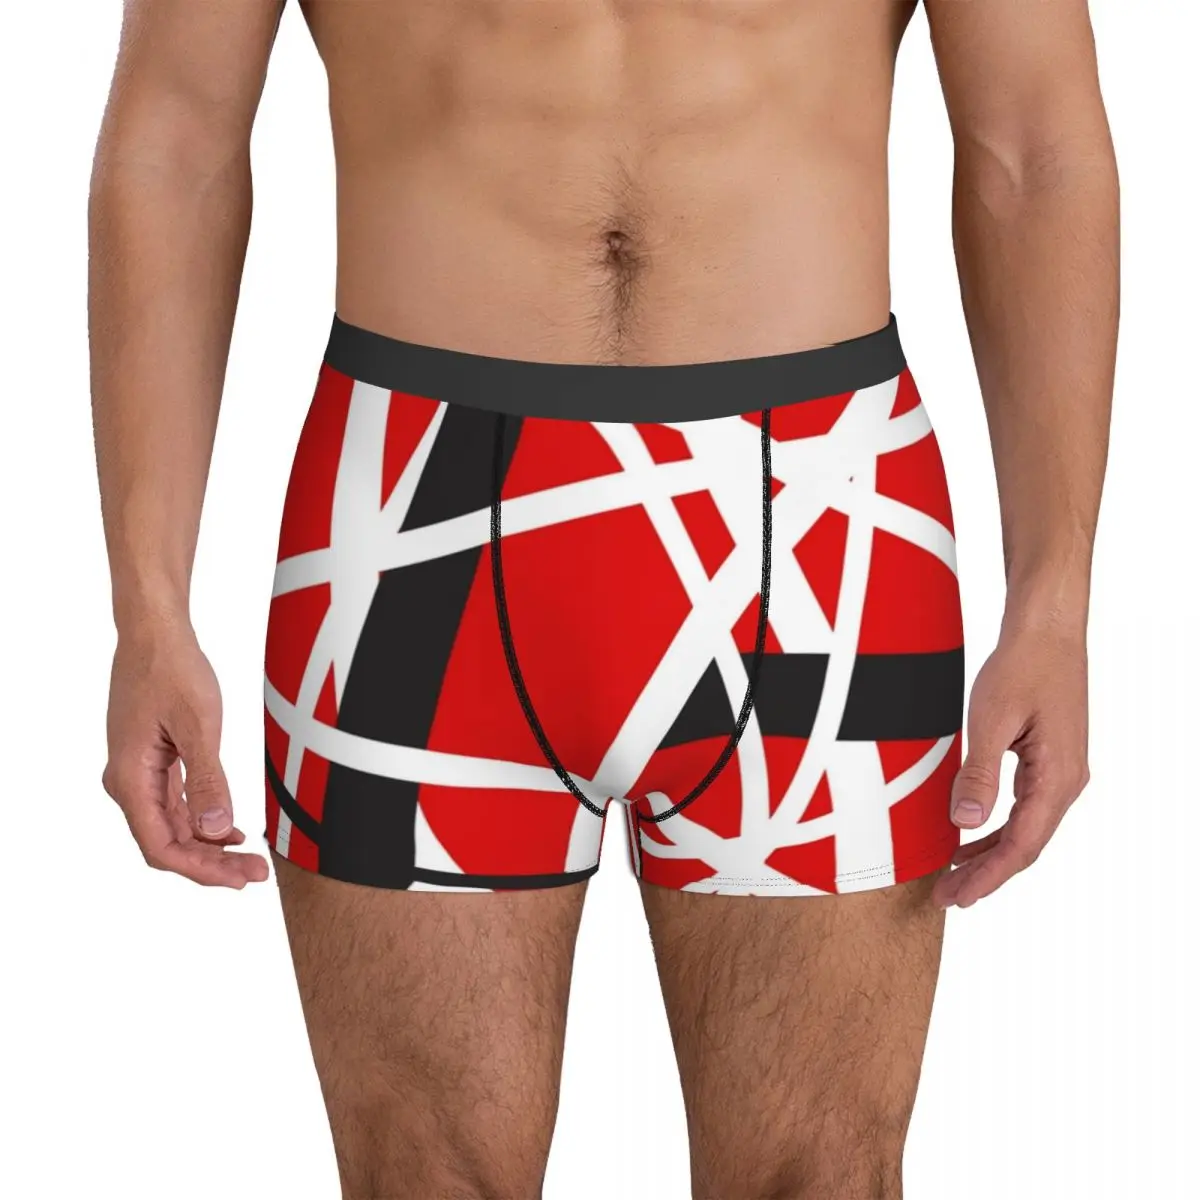 

Van Halen Underwear EVH 5150 STRIPES 3D Pouch High Quality Trunk Design Boxer Brief Breathable Man Underpants Big Size 2XL